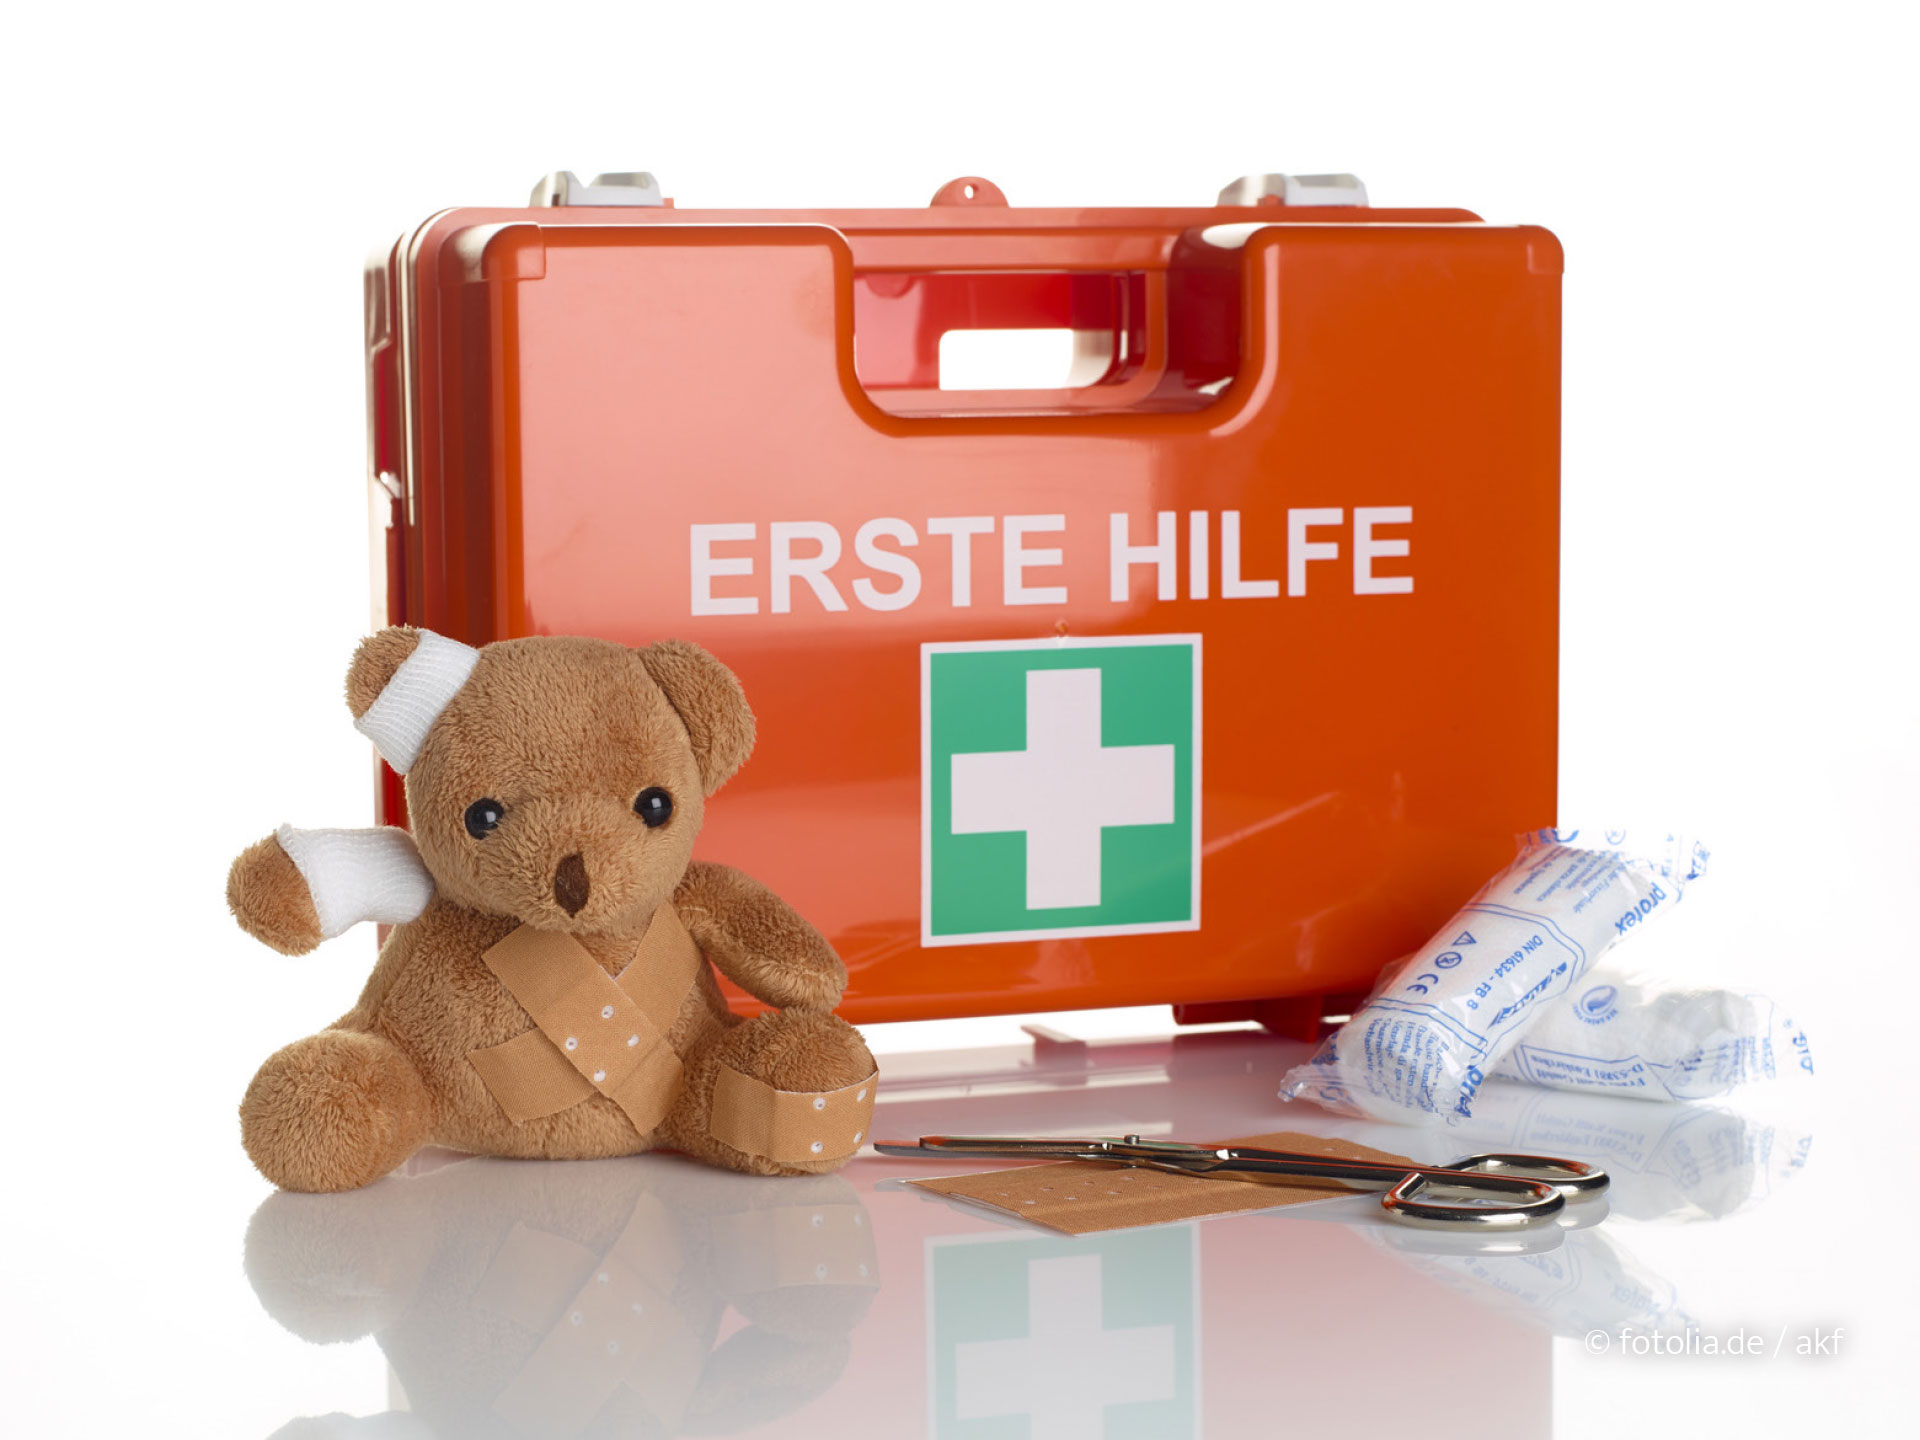 Auch ein Erstehilfekoffer sollte es in jedem Haushalt geben. (Foto: © fotolia.de / akf)